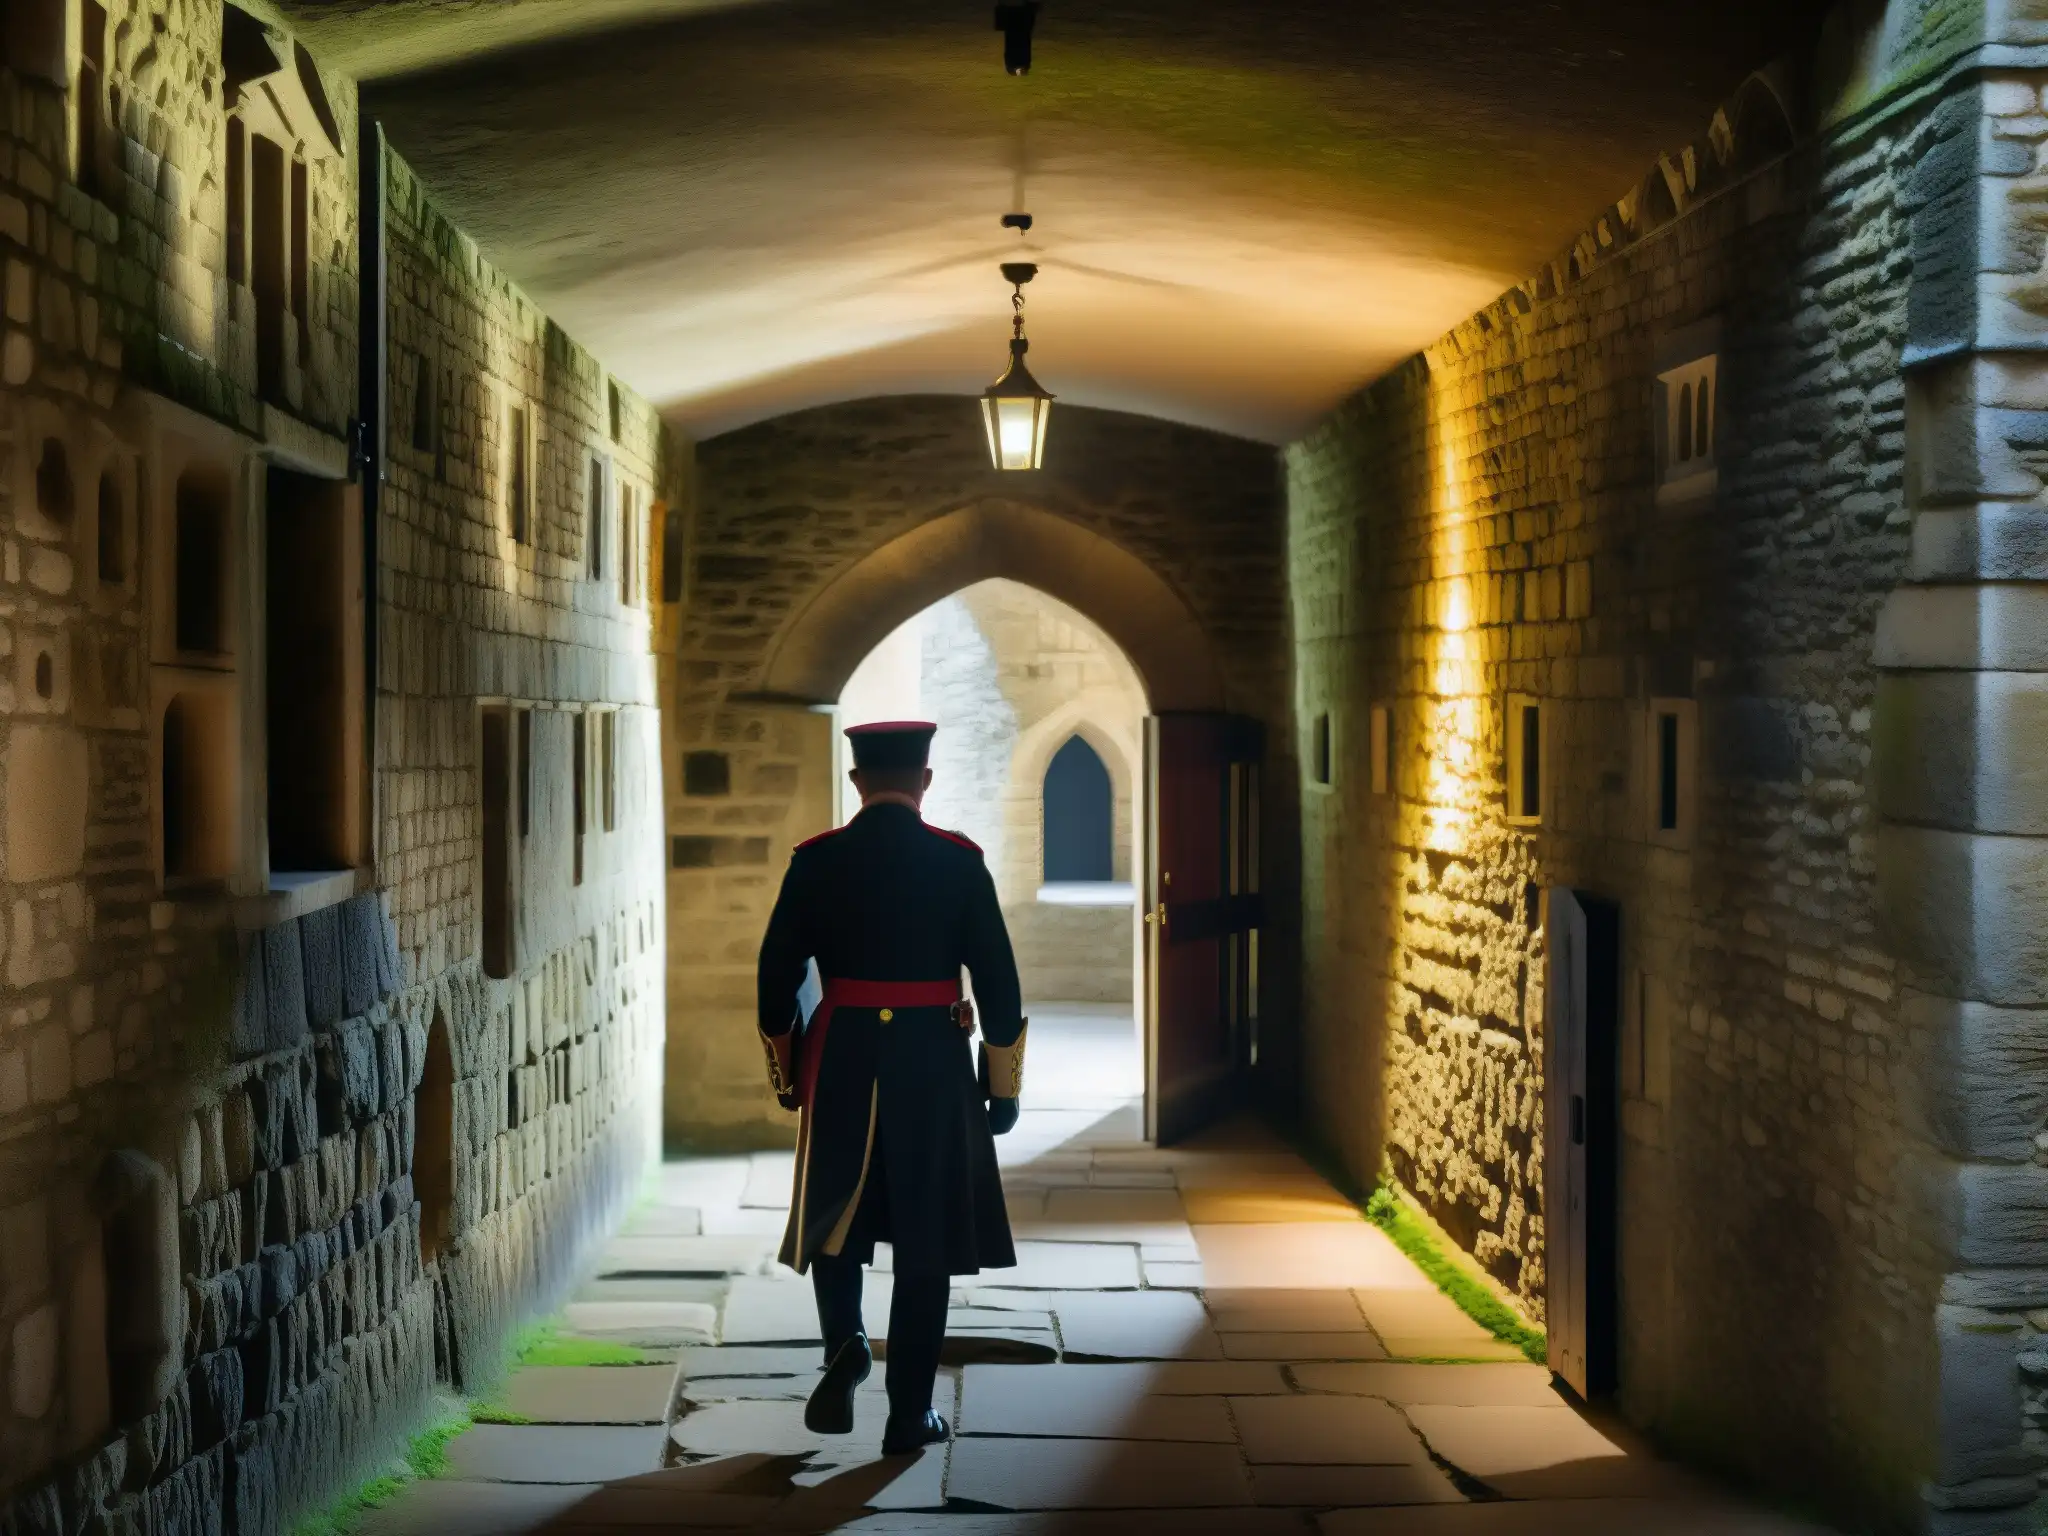 Imagen detallada de la misteriosa Torre de Londres, con apariciones fantasmales y atmósfera escalofriante